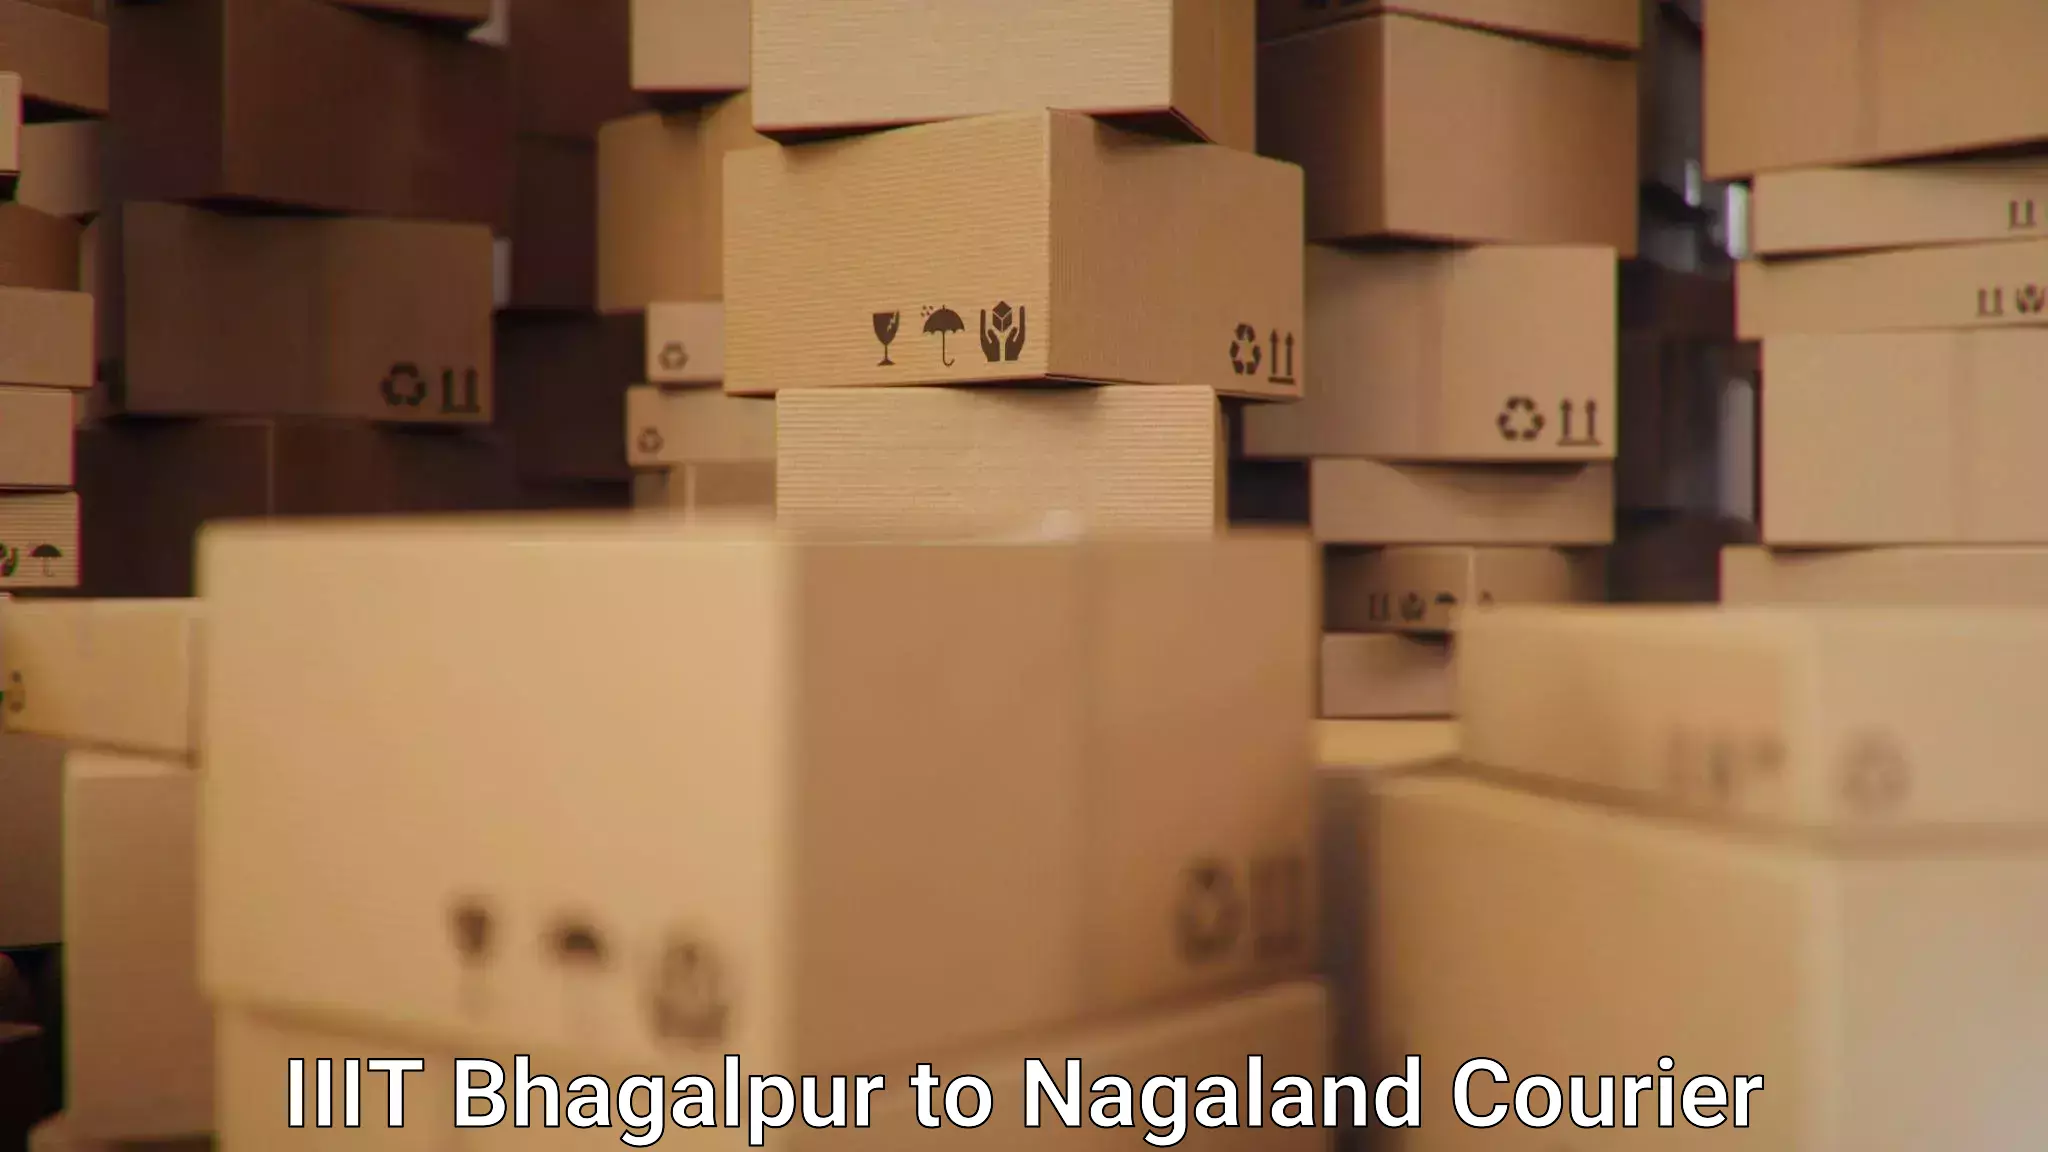 User-friendly courier app IIIT Bhagalpur to Dimapur